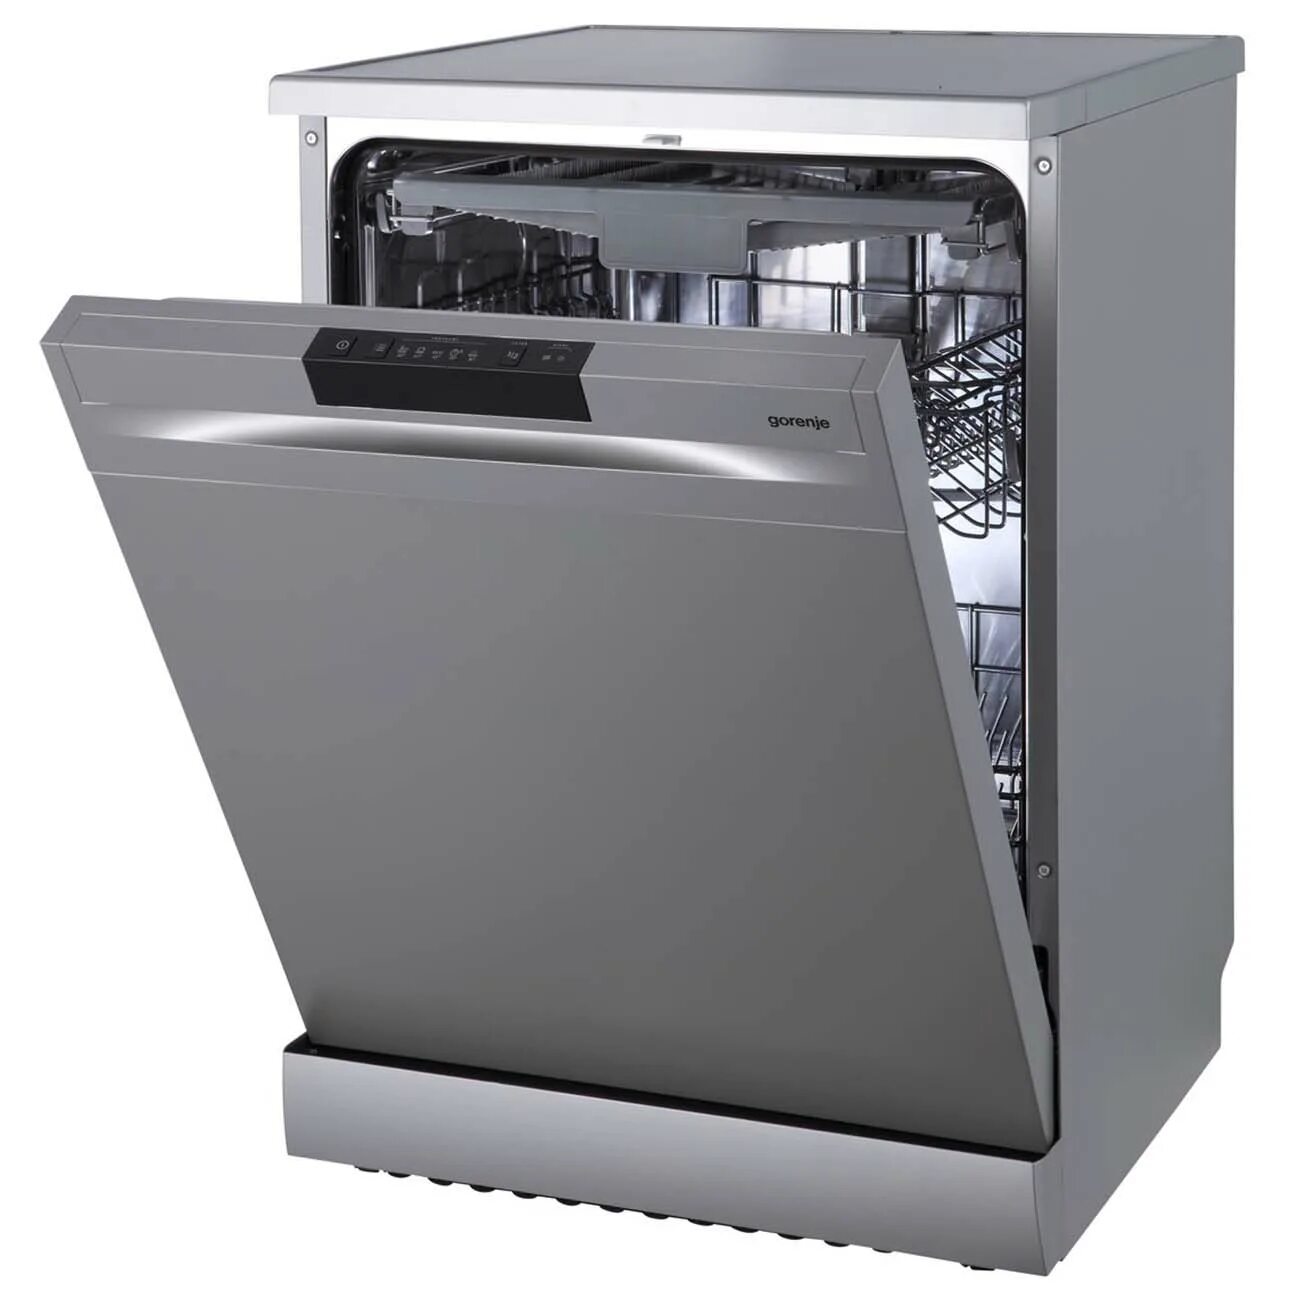 Посудомоечная машина Gorenje gs620e10s. Посудомоечная машина 60 см Gorenje gs620e10s. Посудомоечная машина Gorenje gs62040w. Посудомоечная машина Gorenje gs520e15w. Встроенная посудомойка горенье